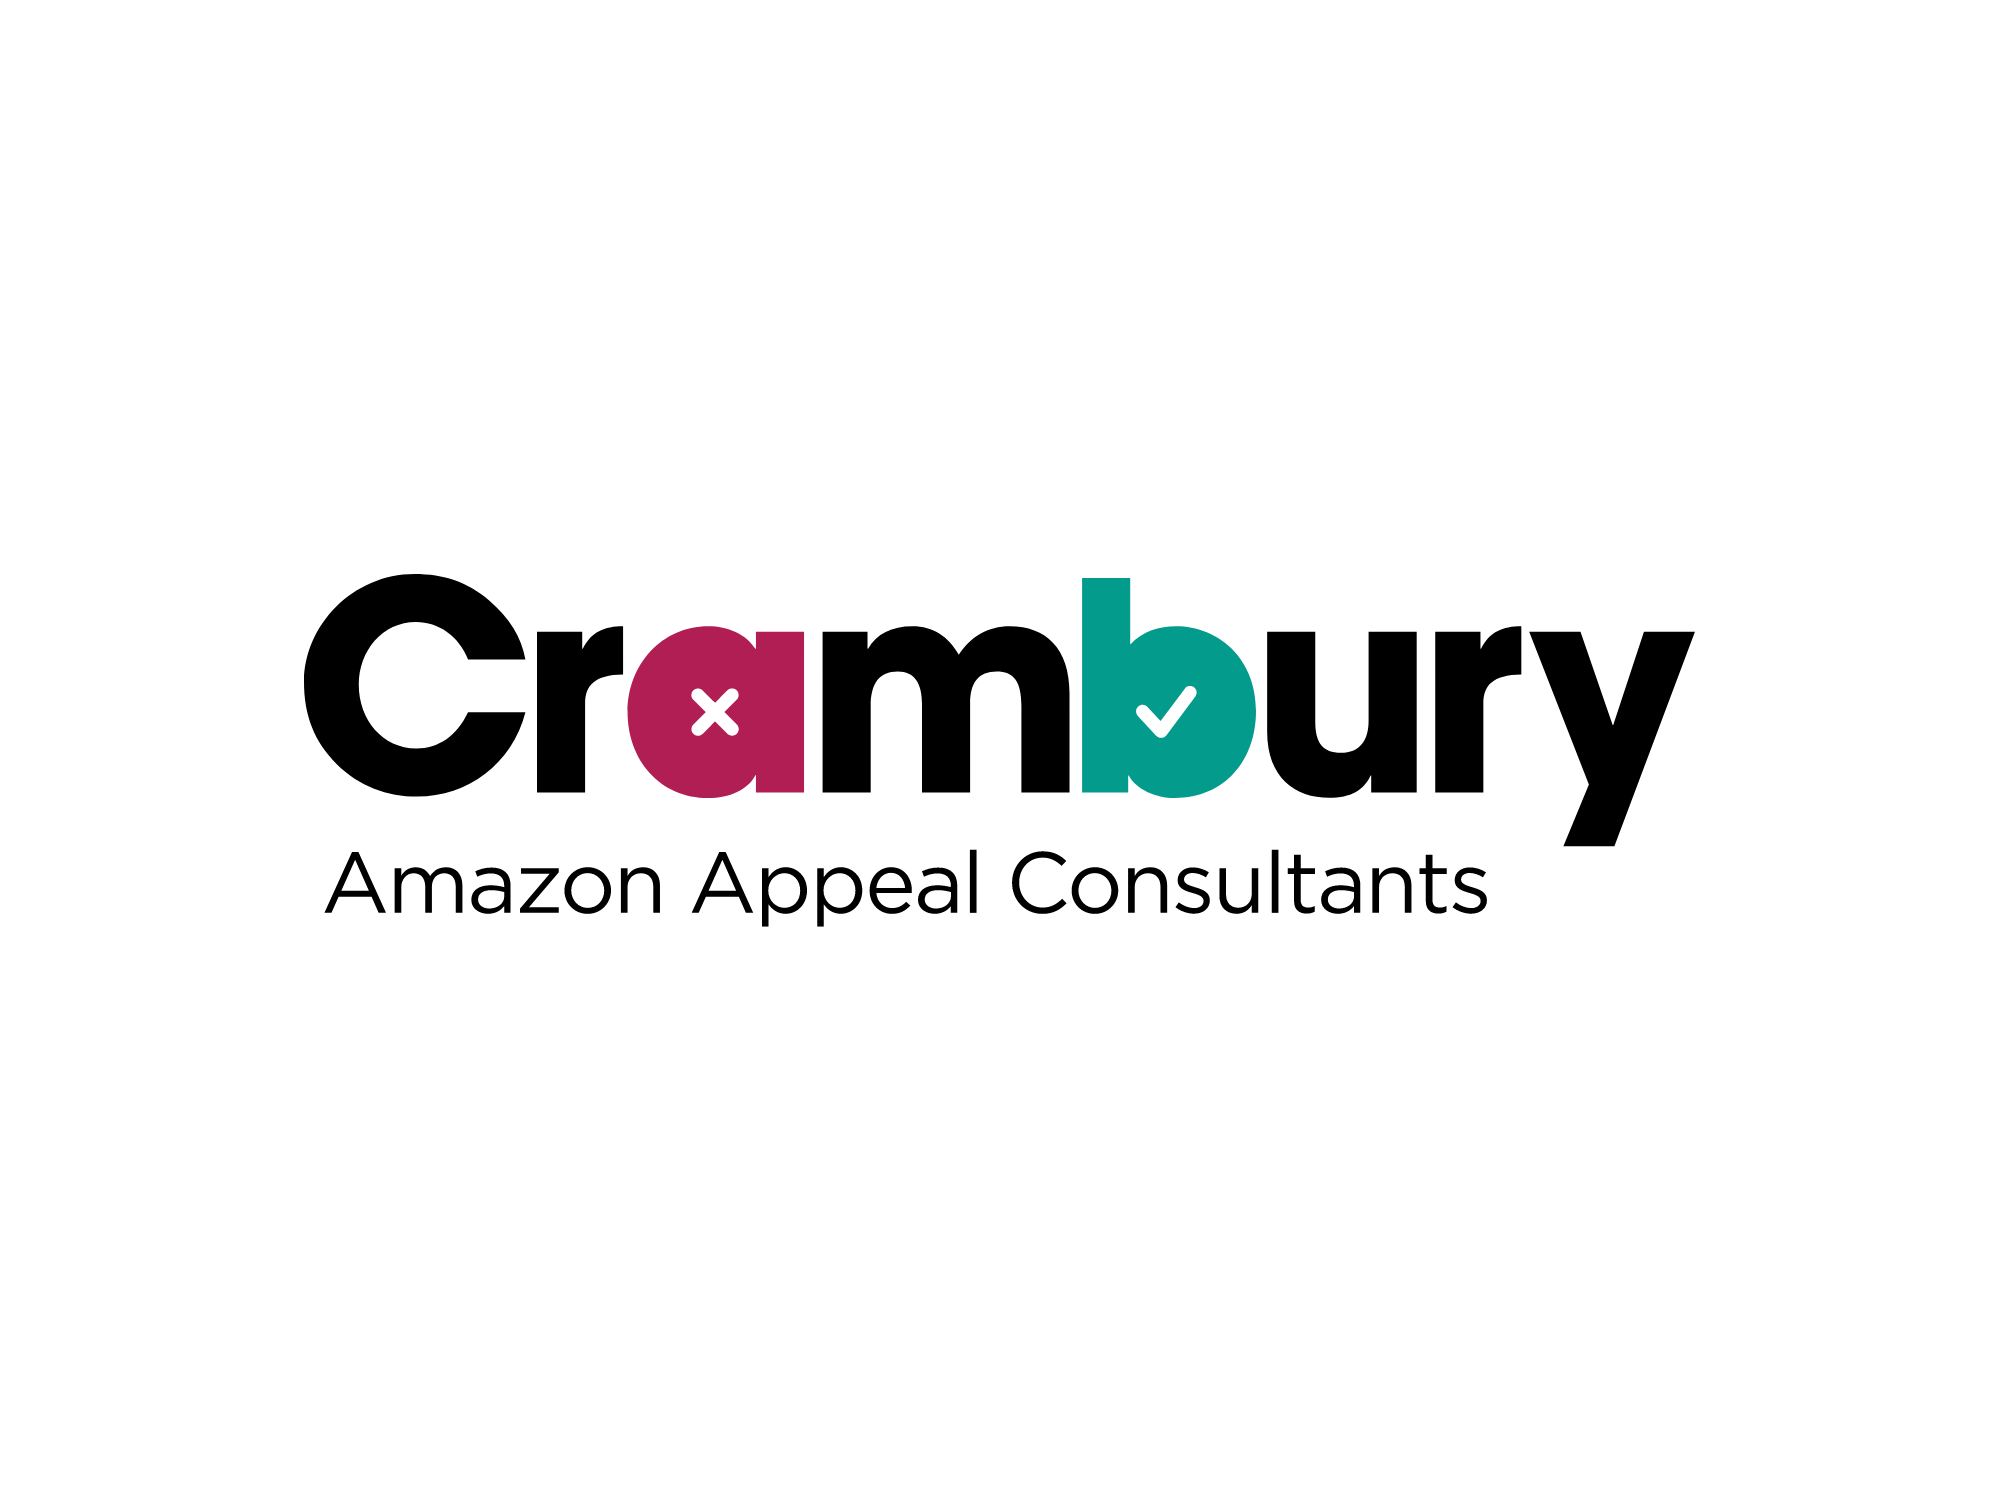 Crambury, Amazon Appeal Consultants